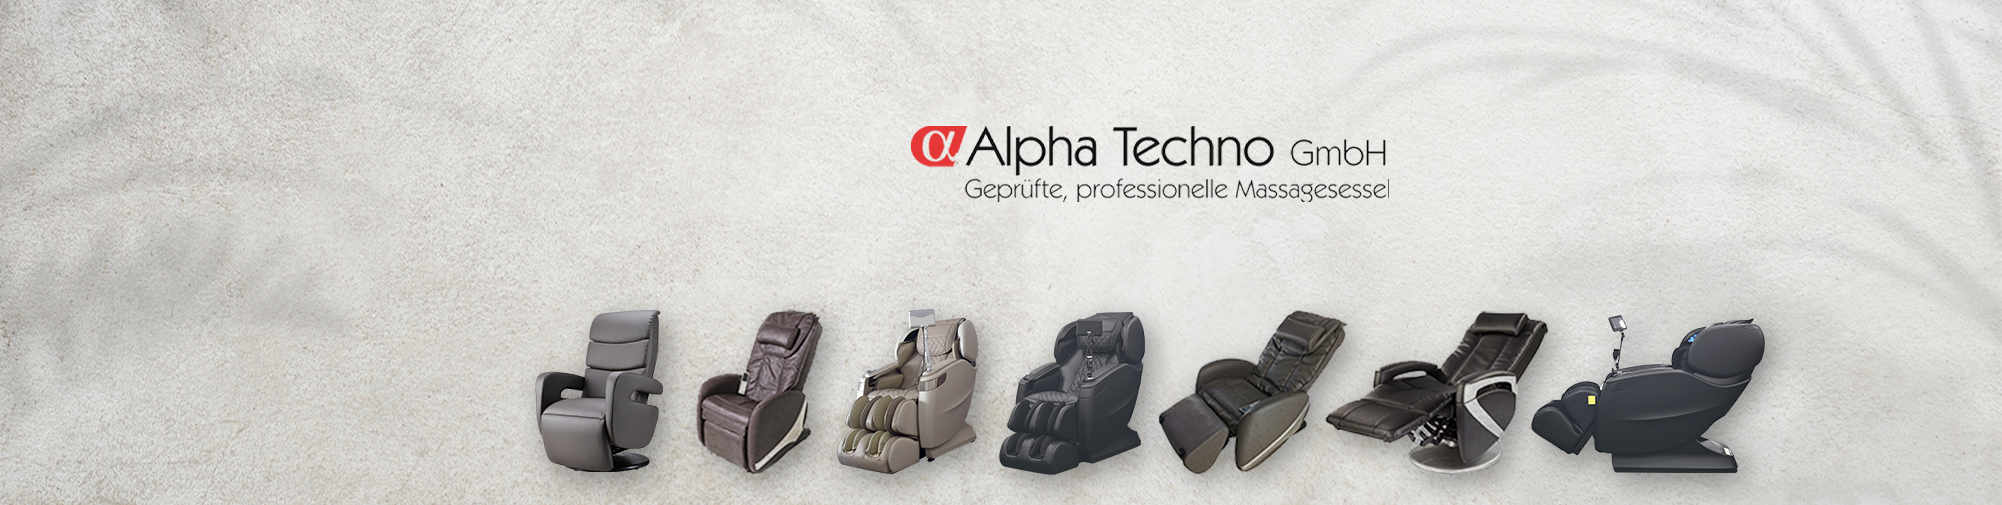 Alpha Techno – Europas Nummer 1 | Massagesessel Welt